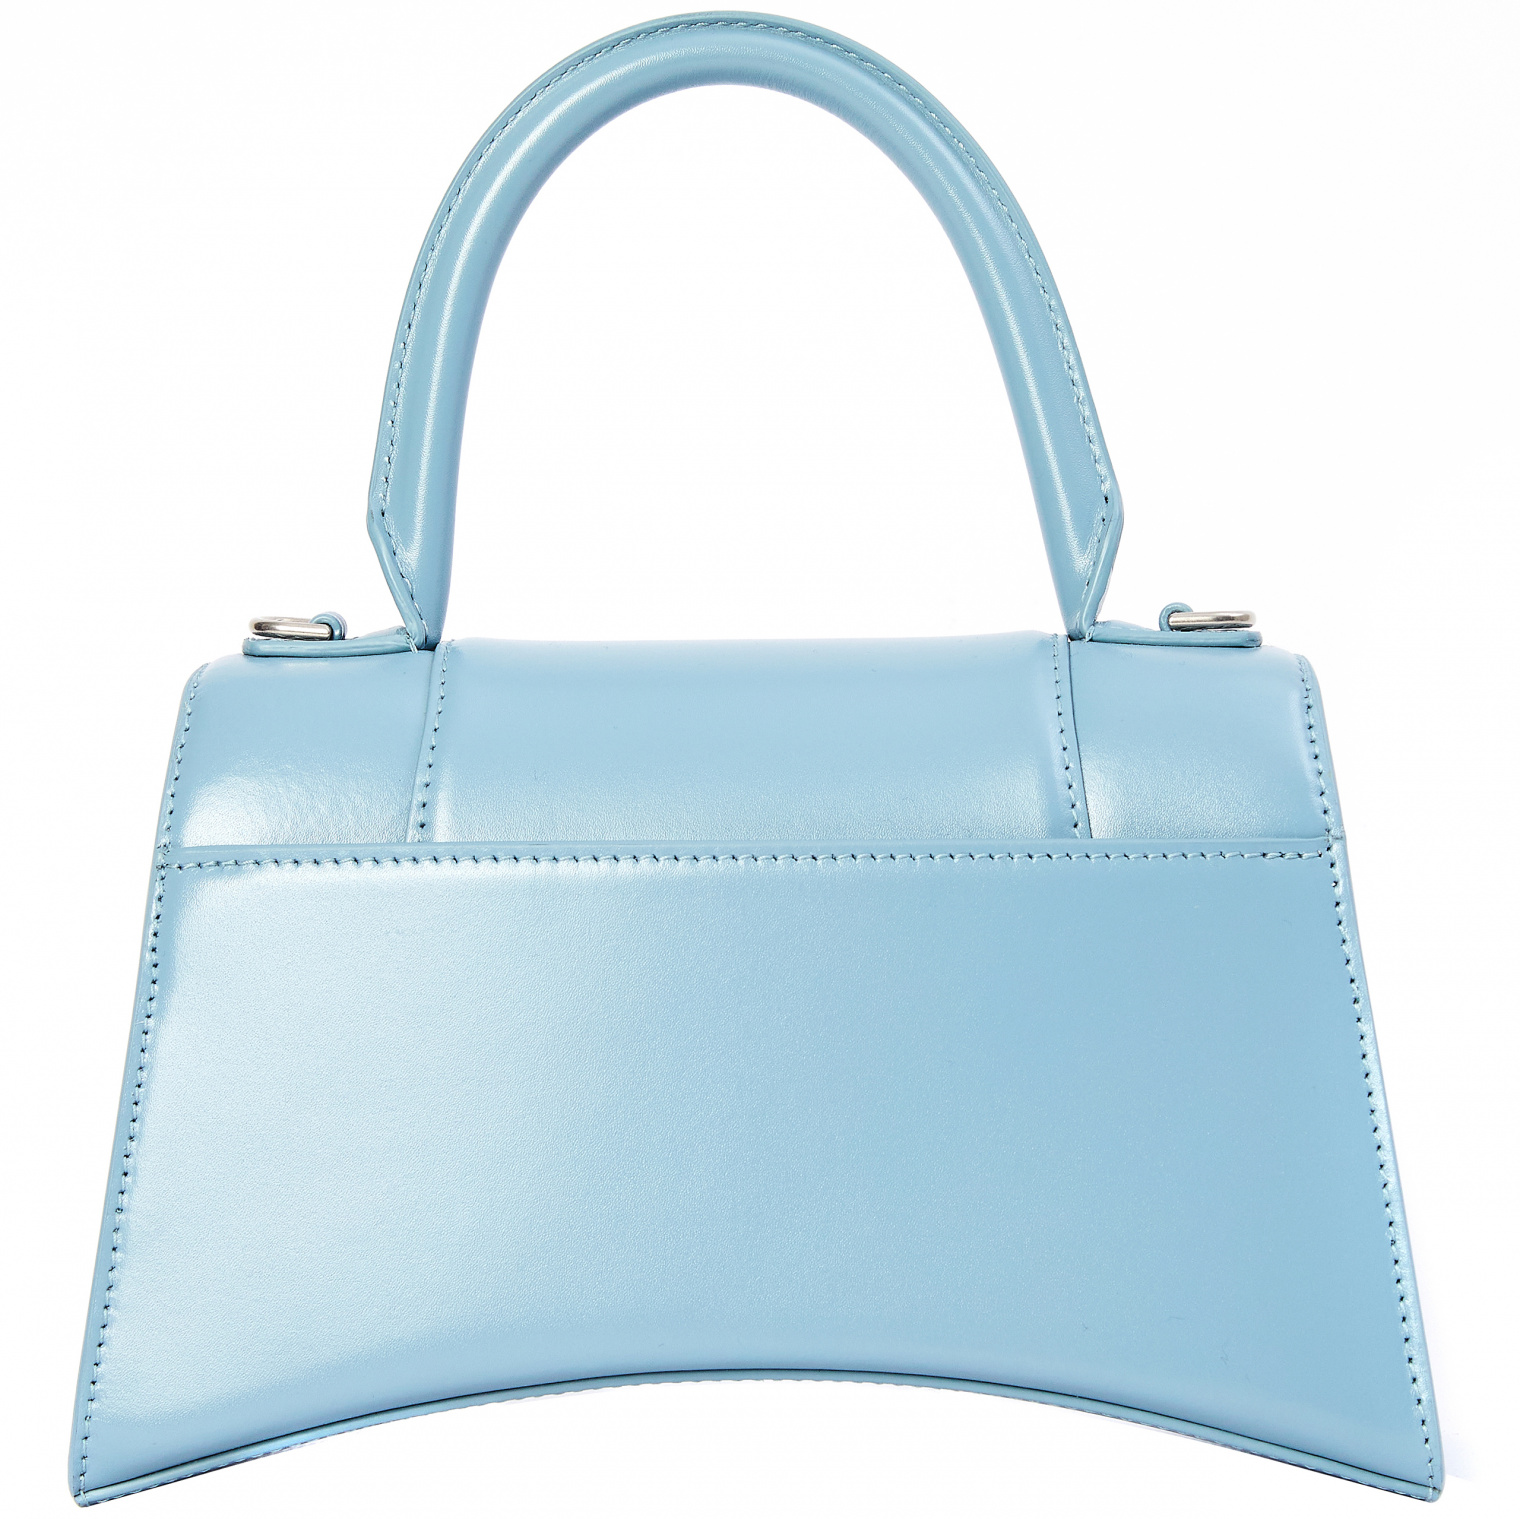 Balenciaga Blue Small Hourglass Bag